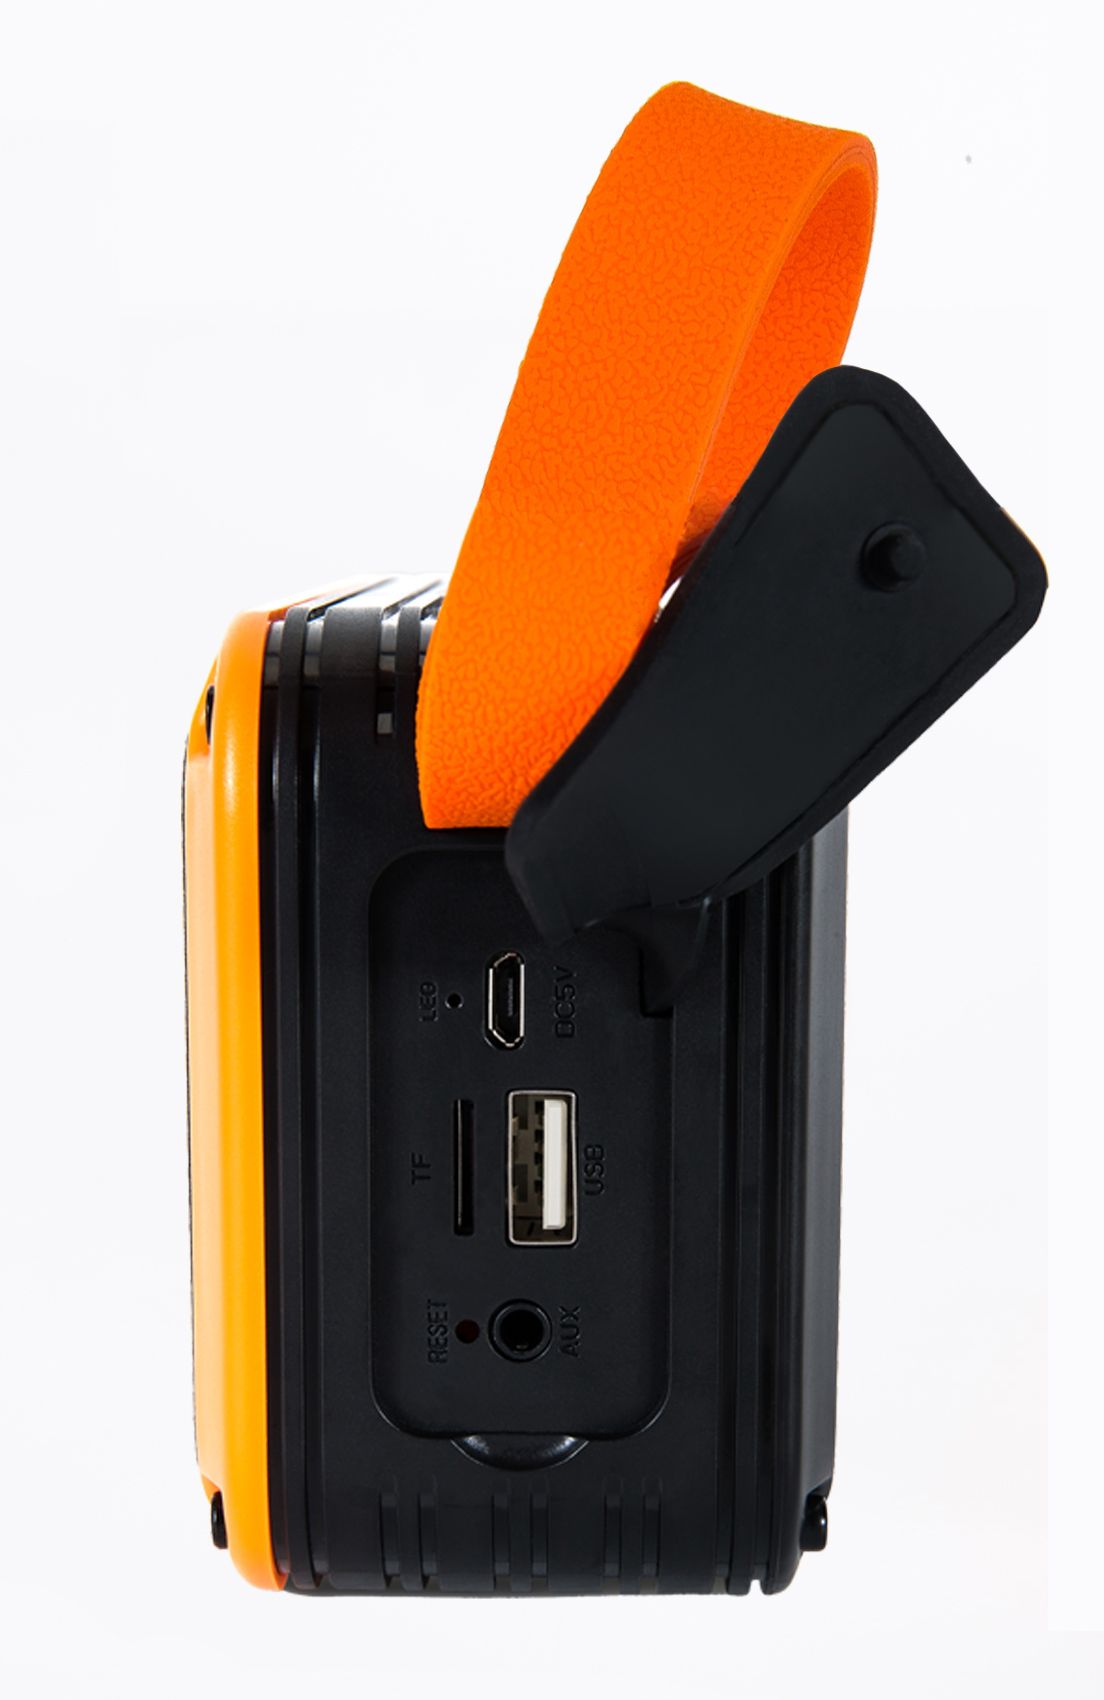 MCE-V7爆款音箱性价比天线显示屏便携手提蓝牙插卡USB音箱非洲详情图2